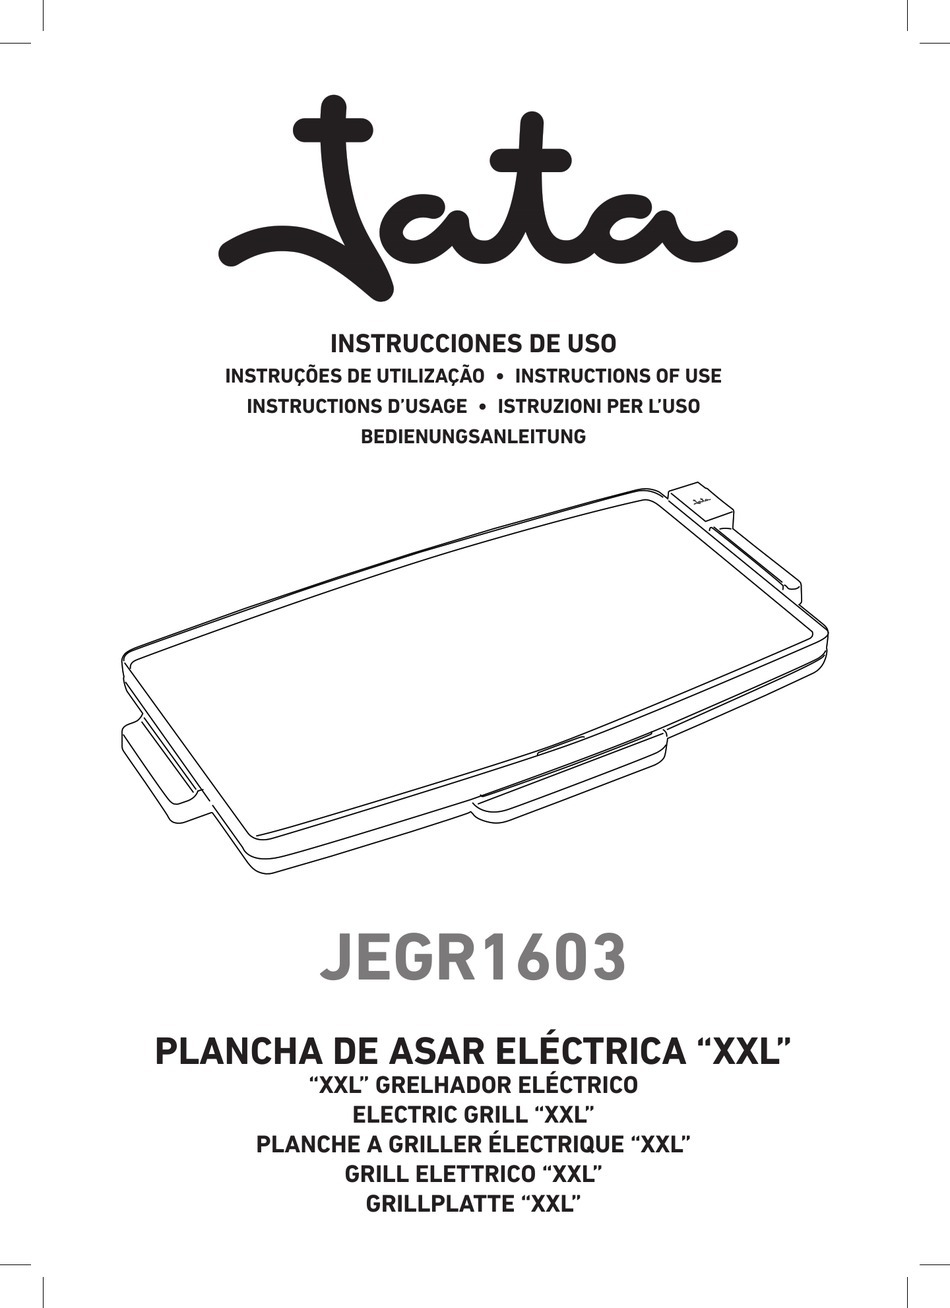 Grelhador eléctrico XXL JEGR1603